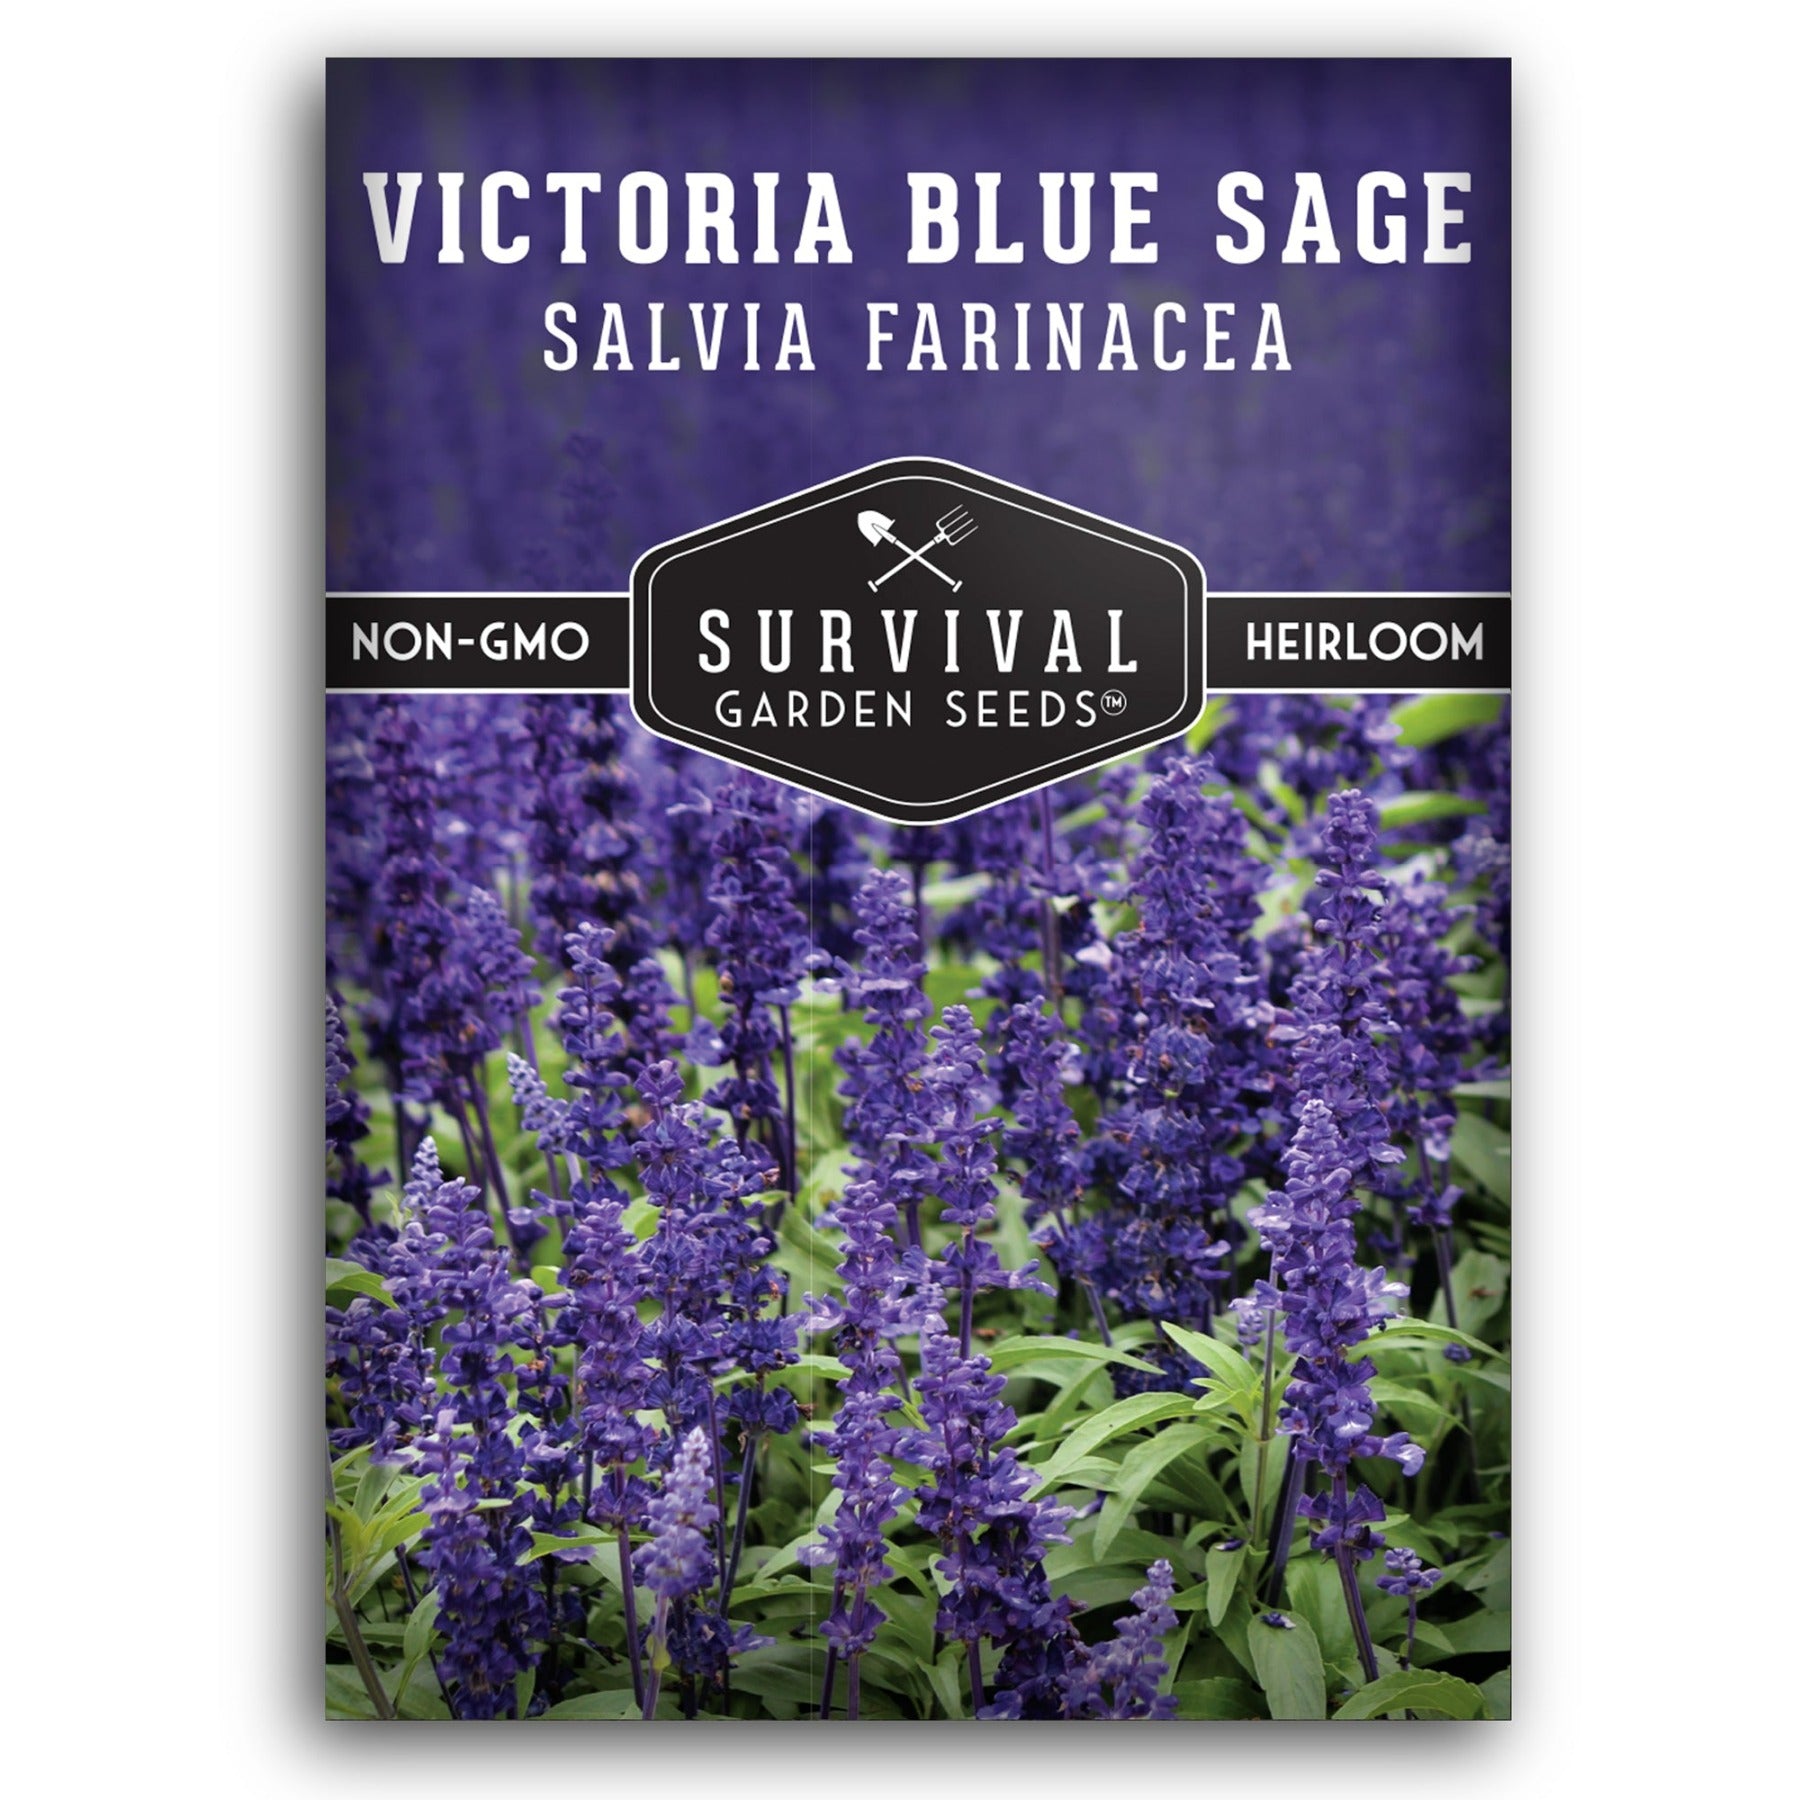 Victoria Blue Sage seeds for planting